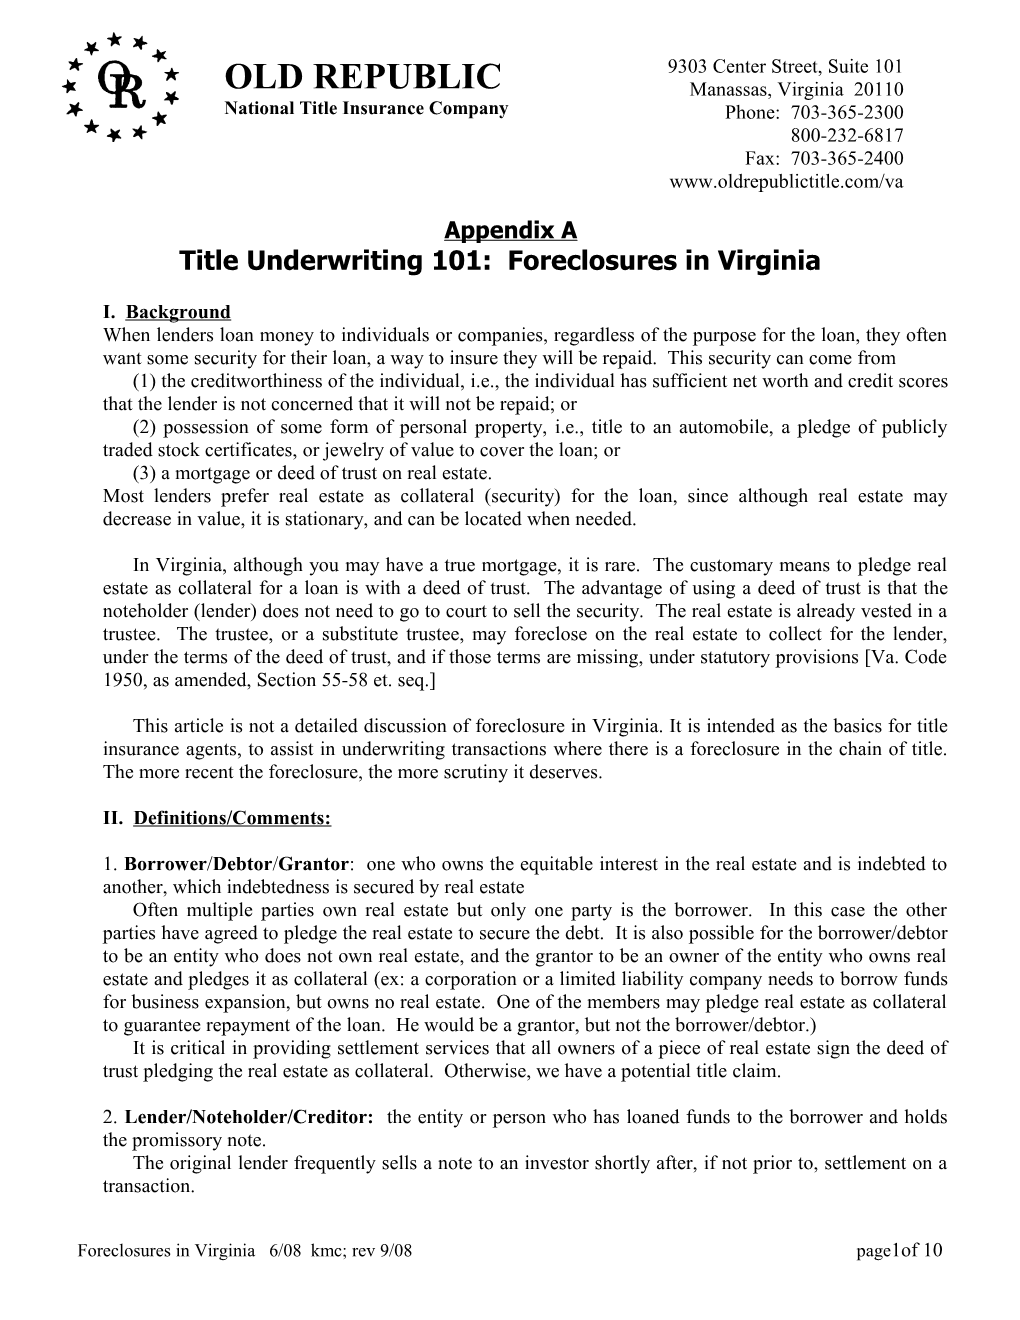 Title Underwriting 101: Foreclosures In Virginia